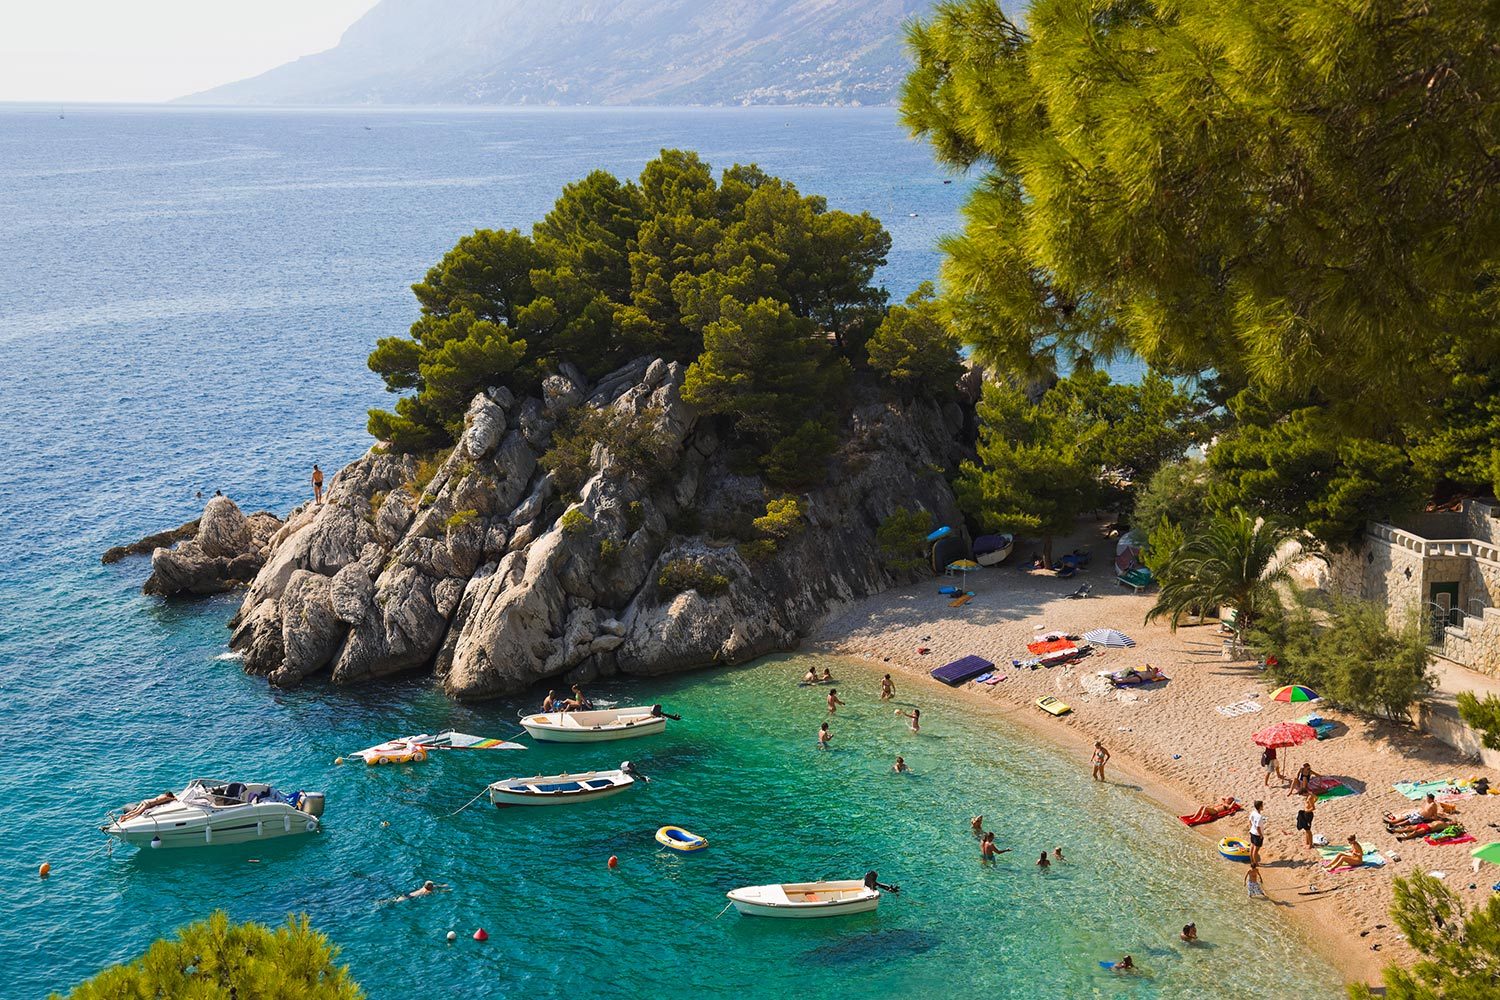 Лучшие термальные спа курорты хорватии топ 5 - хорватия отдых + sights